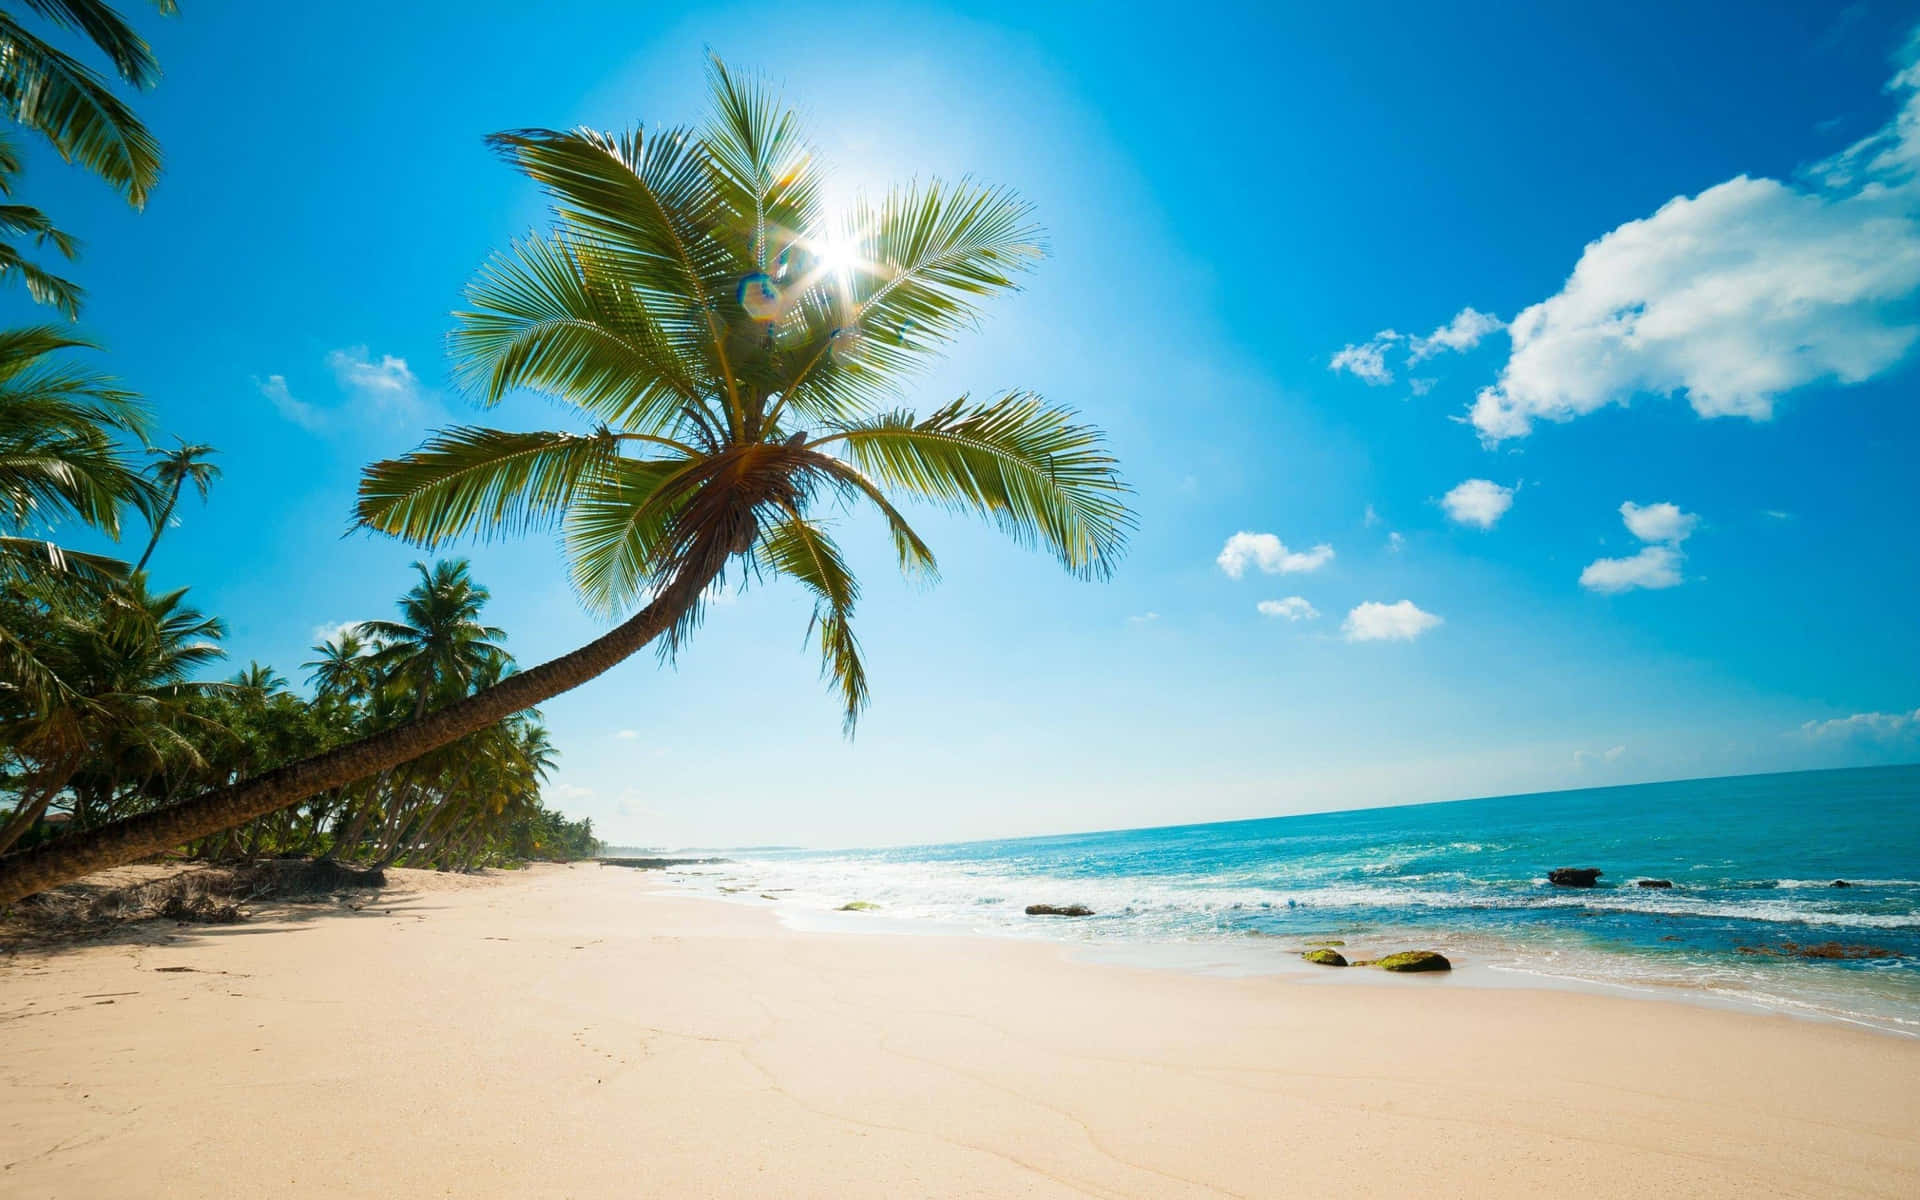 Escápatede Todo Y Disfruta Del Sol En Una Hermosa Playa Caribeña. Fondo de pantalla